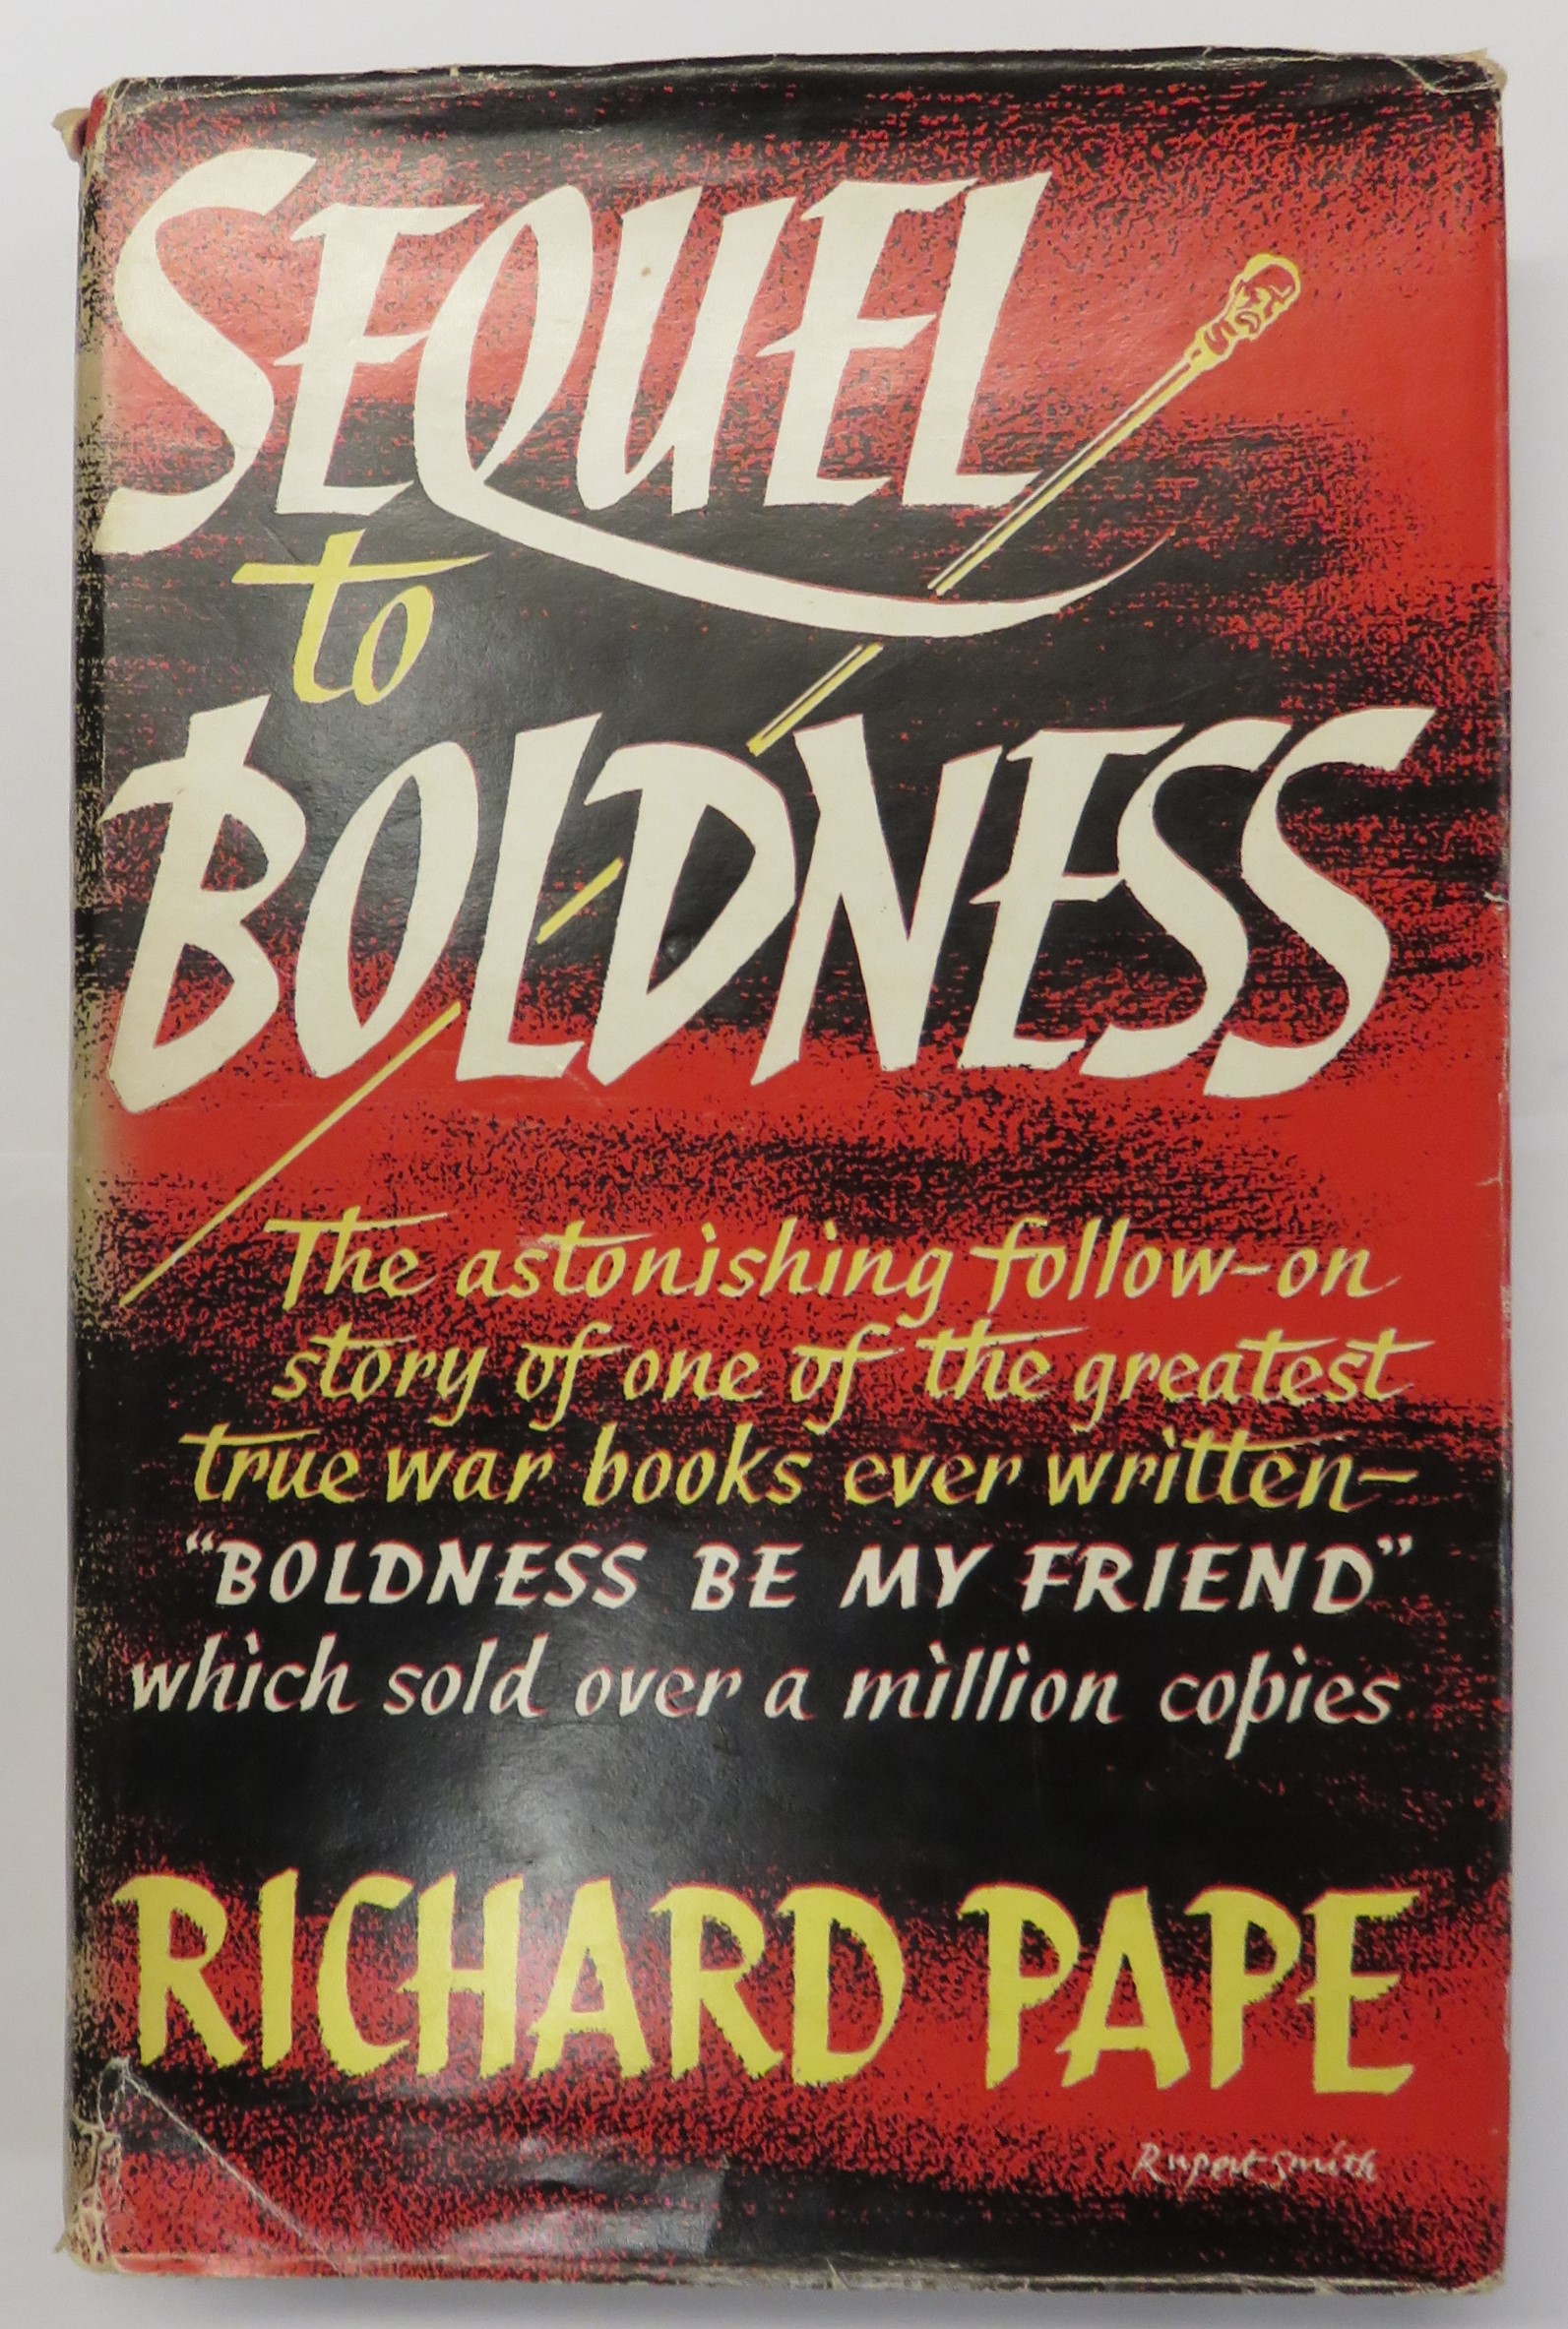 Sequel to Boldness